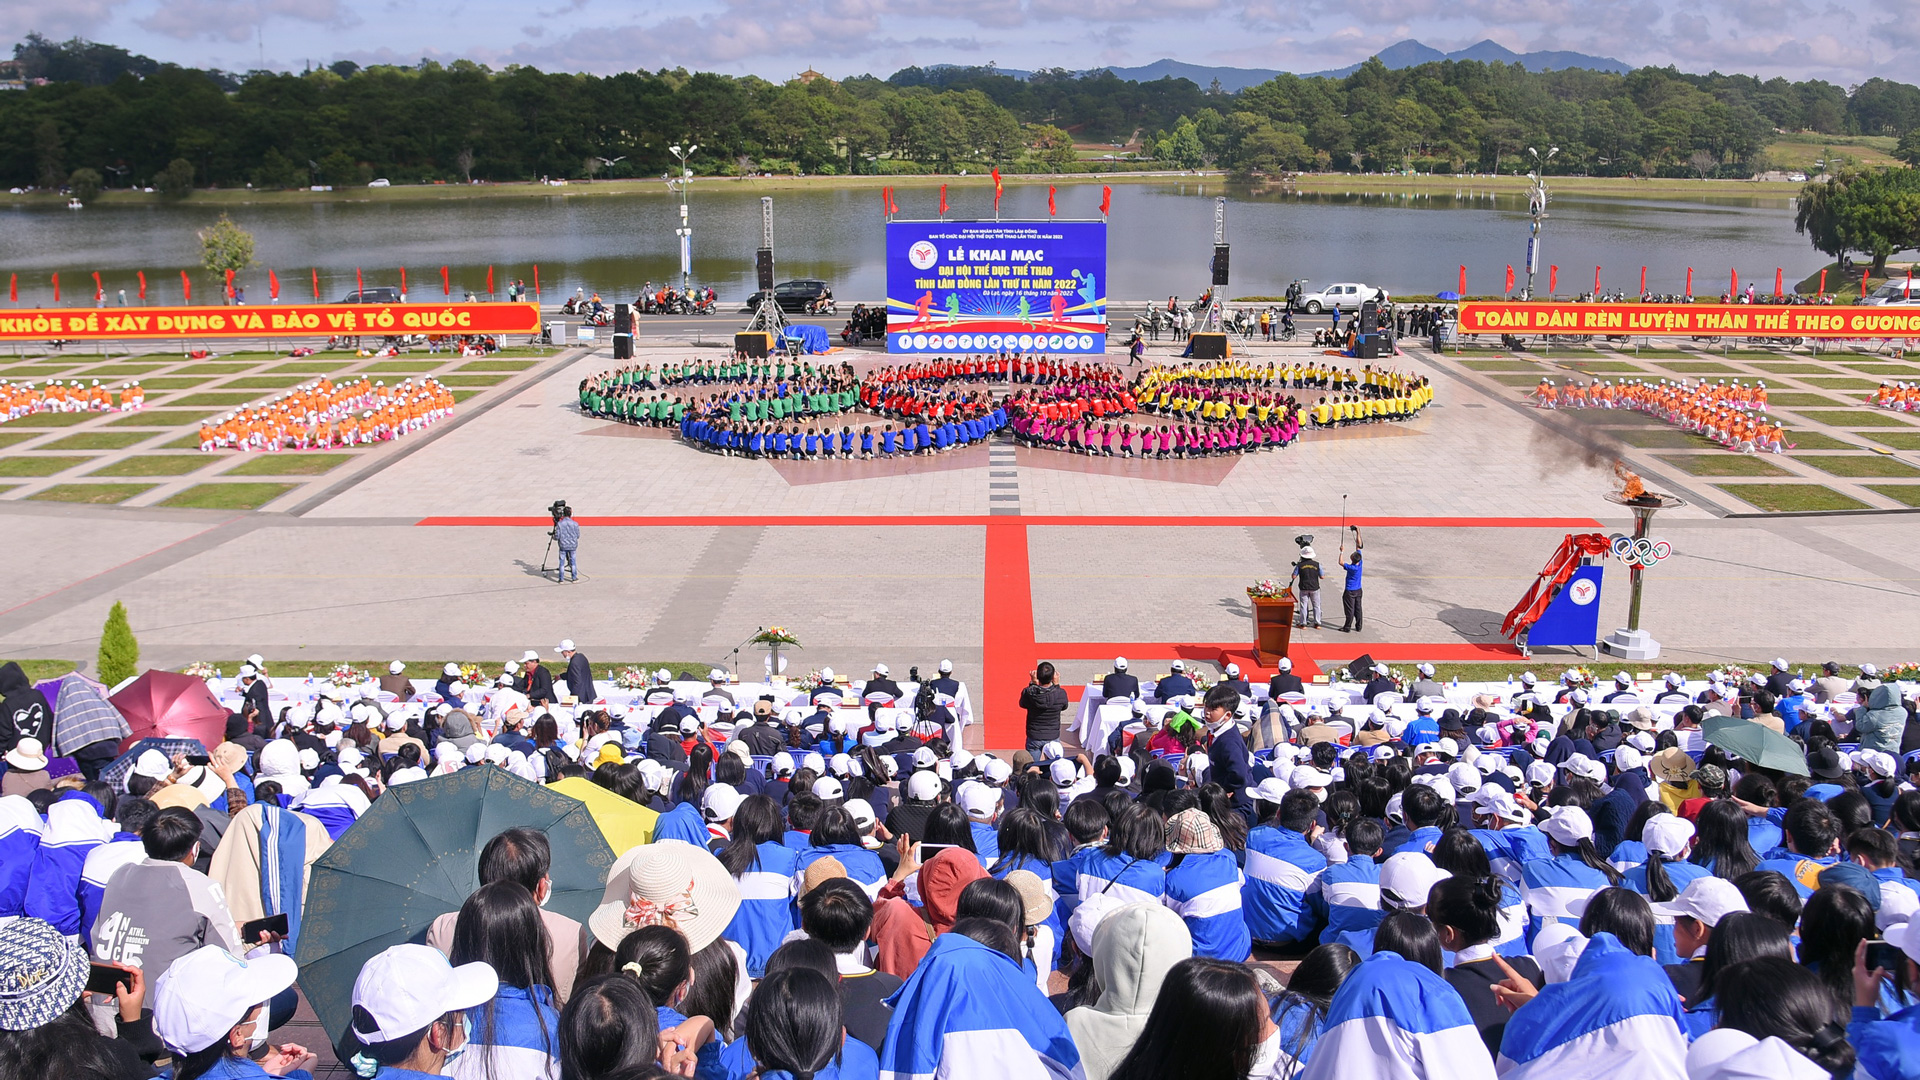 Lễ khai mạc Đại hội TDTT Lâm Đồng lần thứ IX năm 2022 tại TP Đà Lạt